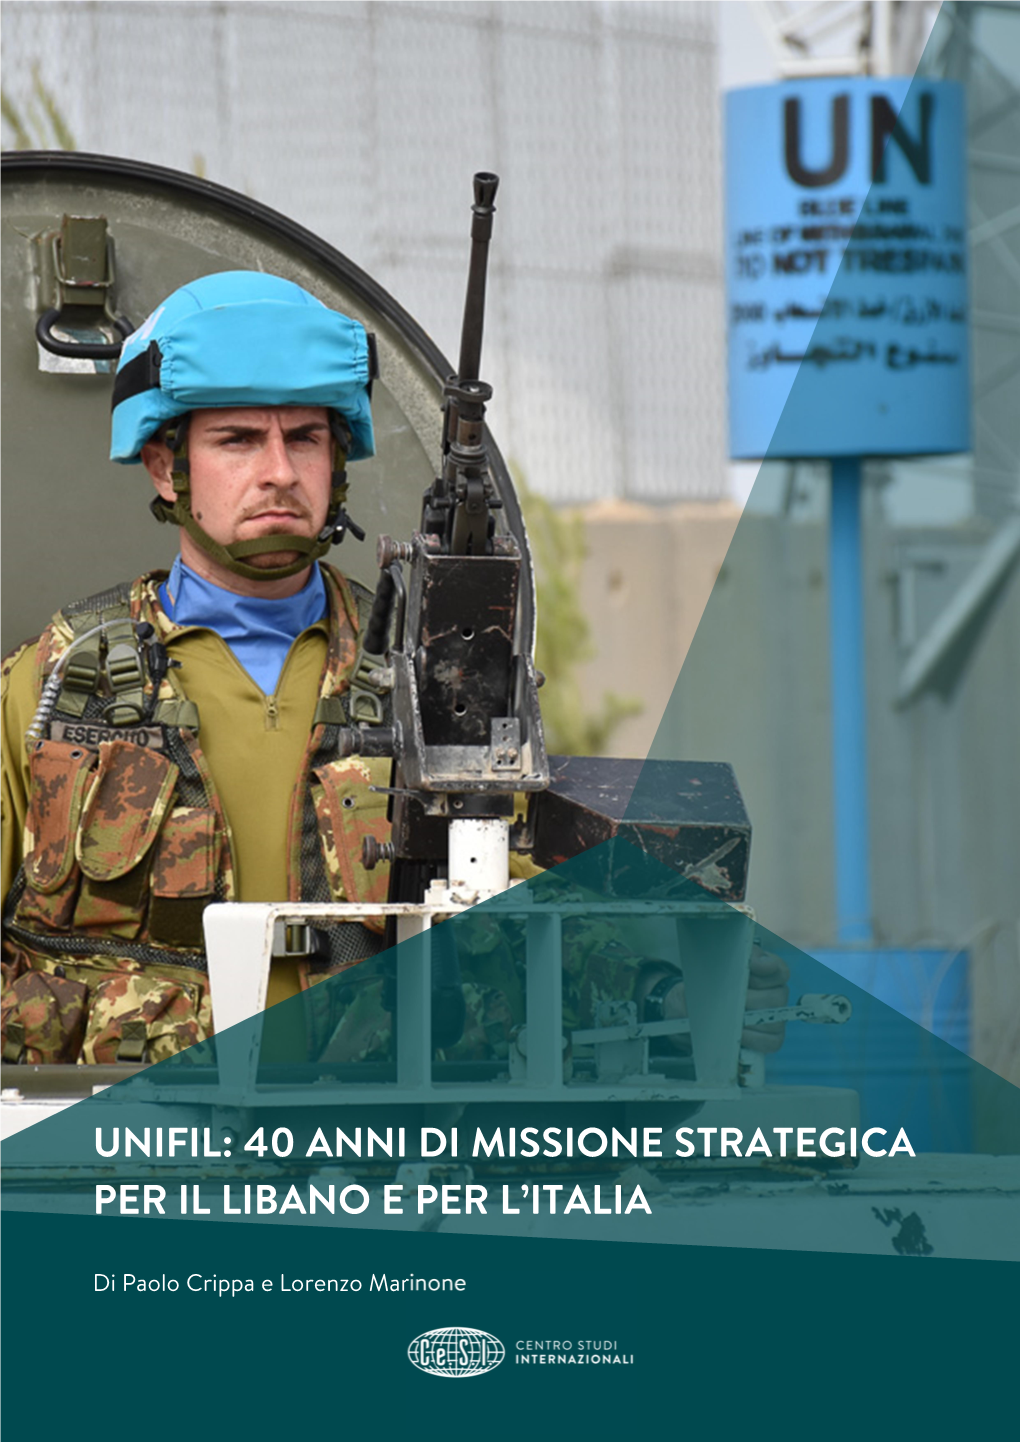 Unifil: 40 Anni Di Missione Strategica Per Il Libano E Per L’Italia